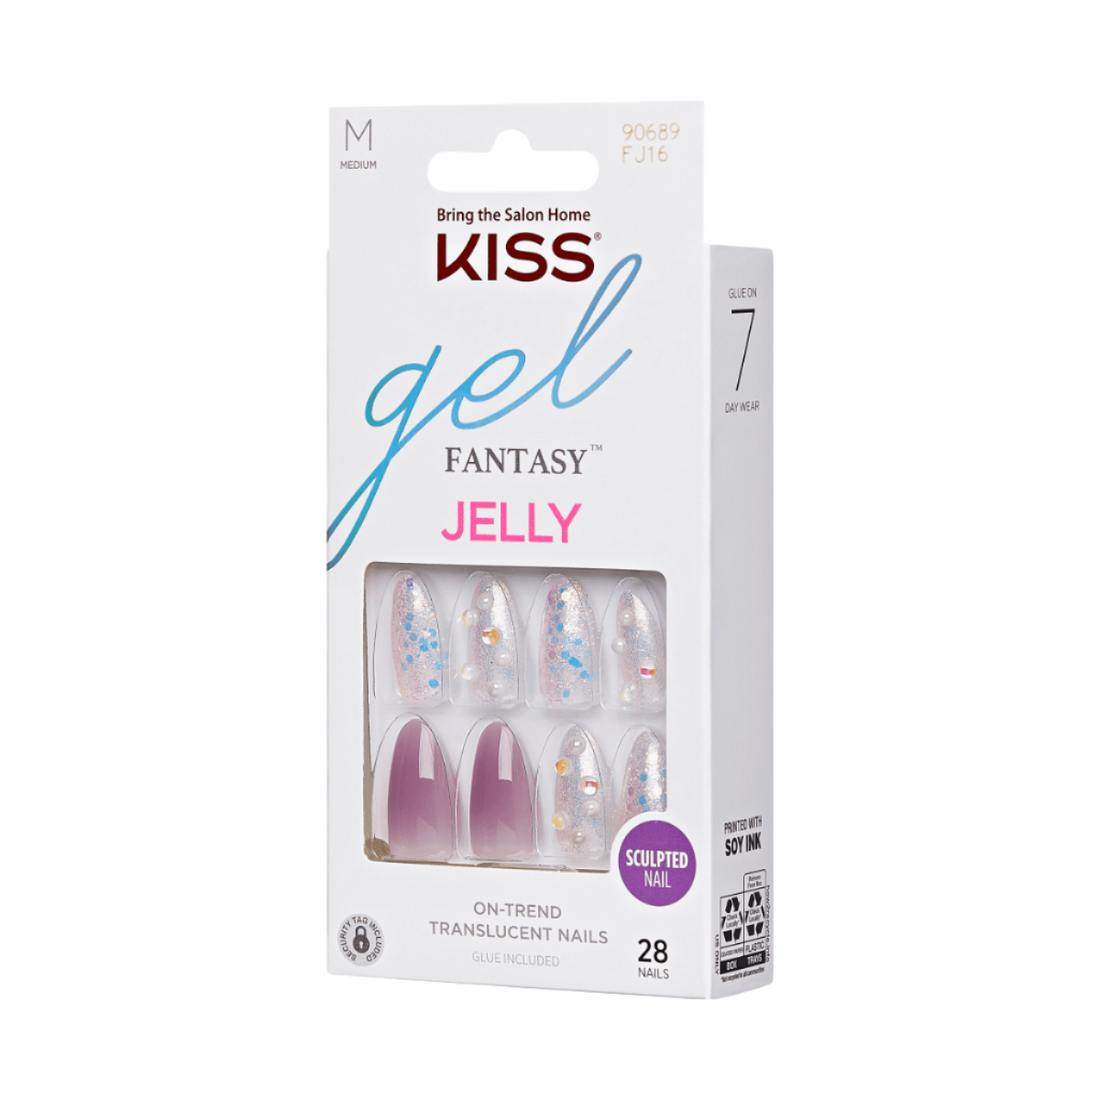 KISS Gel Fantasy Jelly Nails - Smokey Jelly